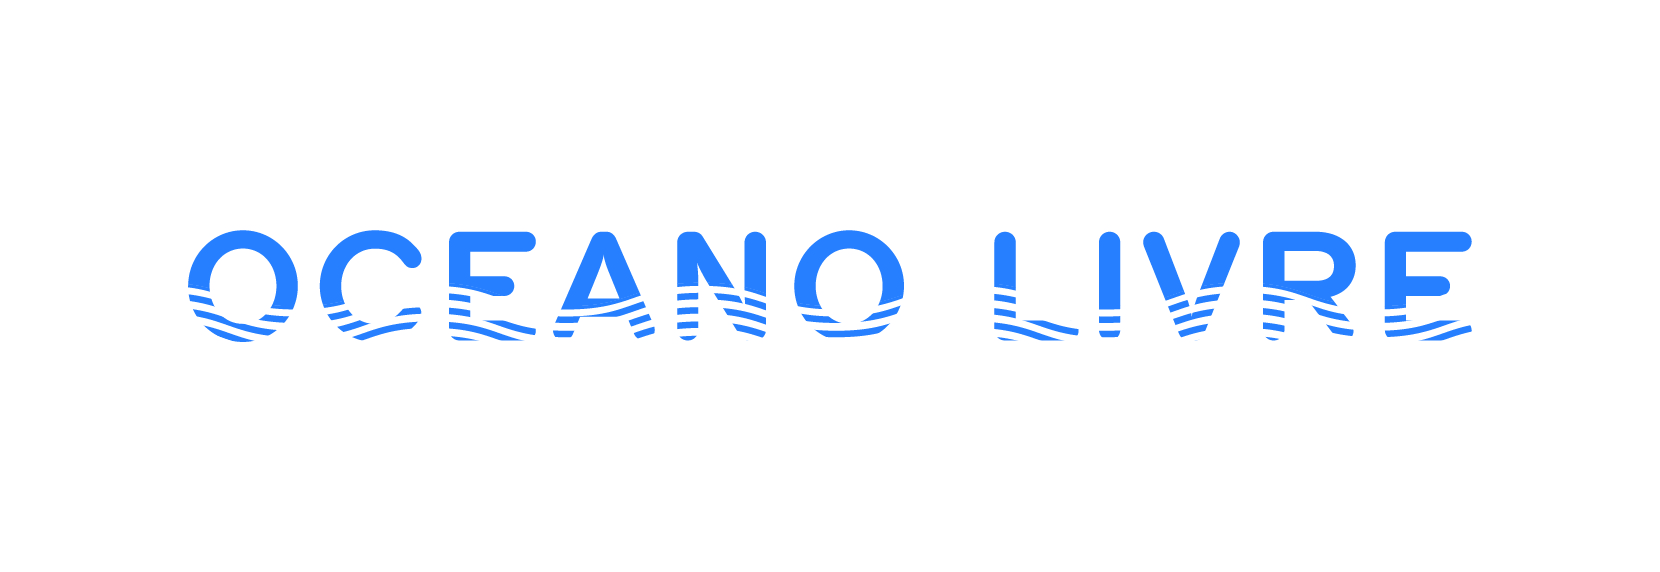 OceanoLivre_logo